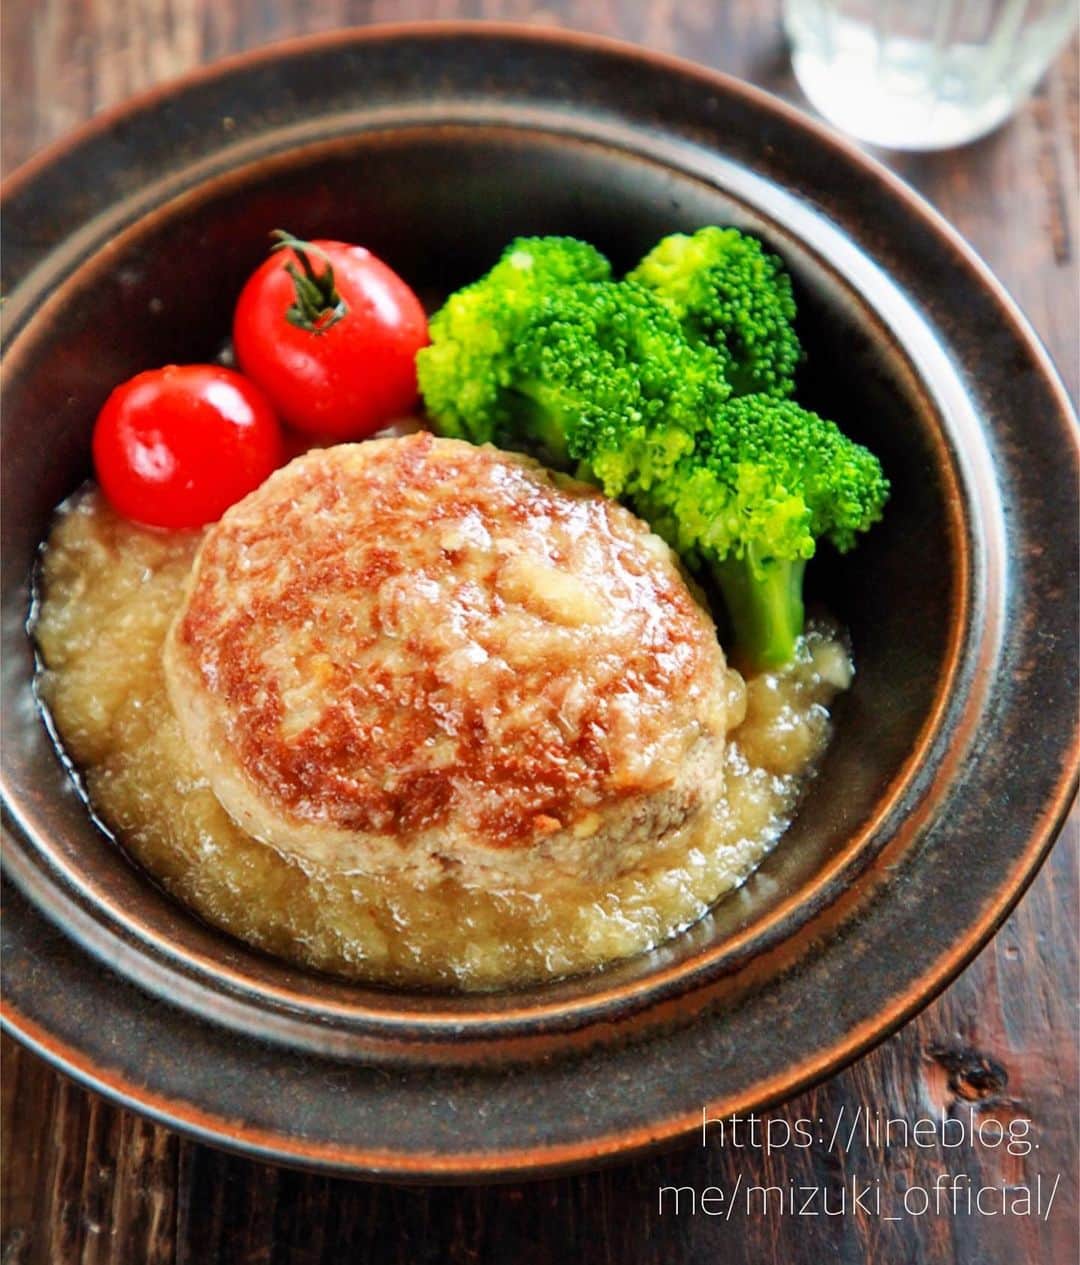 Mizuki【料理ブロガー・簡単レシピ】さんのインスタグラム写真 - (Mizuki【料理ブロガー・簡単レシピ】Instagram)「・﻿ 【レシピ】ーーーーーーーーーーーー﻿ ♡おろしあんかけ豆腐ハンバーグ♡﻿ ーーーーーーーーーーーーーーーーー﻿ ﻿ ﻿ ﻿ おはようございます(*^^*)﻿ ﻿ 今日ご紹介させていただくのは﻿ ヘルシーな豆腐ハンバーグ♩﻿ ふんわりジューシーなハンバーグに﻿ 大根おろし入りのあんかけを﻿ た〜〜っぷりかけました♡﻿ 優しい味わいでペロリと食べられますよ♩﻿ ﻿ 作り方は超簡単(*´艸`)﻿ お豆腐は水切り不要！﻿ たねは一気に混ぜるだけ！﻿ あんかけは面倒なとろみ付けなし！﻿ ﻿ 思い立ったらすぐにできるので﻿ よかったらお試し下さいね(*^^*)﻿ ﻿ ﻿ ﻿ ーーーーーーーーーーーーーーーーーーーー﻿ 【2人分】﻿ ●合びき肉...200g﻿ ●木綿豆腐...1/3丁(100g)﻿ ●片栗粉...小2﻿ ●醤油...小1﻿ ●塩こしょう...少々﻿ サラダ油...小1﻿ 大根...5cm(200g)﻿ ☆水...100ml﻿ ☆めんつゆ(2倍濃縮)...大3﻿ ☆片栗粉...大1/2﻿ ﻿ 1.大根はすり下ろして軽く水気を切り、☆と合わせておく(←あんかけ)。ボウルに●を入れてよく混ぜ、2等分の小判形にする。﻿ 2.フライパンにサラダ油を中火で熱し、ハンバーグを焼く。焼き色が付いたら裏返し、フタをして弱火で5分蒸し焼きにする。﻿ 3.あんかけの材料をもう一度よく混ぜてから加え、混ぜながらとろみをつける。﻿ ーーーーーーーーーーーーーーーーーーーー﻿ ﻿ ﻿ ﻿ 《ポイント》﻿ ♦︎あんかけの材料を加えたら木べらなどで優しく混ぜて下さい♩﻿ ♦︎あんかけはたっぷりです♩倍量(4人分)作る場合は、ハンバーグの材料は2倍、あんかけの材料は1.5倍でOK♩﻿ ﻿ ﻿ ﻿ ﻿ ﻿ ﻿ ﻿ 【🎥YouTube更新しました🎥】﻿ 今回は材料4つのアメリカンドッグ⭐️﻿ おやつにぴったりなので﻿ よかったらお試し下さいね🥰﻿ ストーリーとハイライトから飛べます♩﻿ ﻿ ﻿ ﻿ ﻿ ﻿ 5刷重版しました🔻﻿ 本当にありがとうございます🙇‍♀️﻿ ＿＿＿＿＿＿＿＿＿＿＿＿＿＿＿＿＿＿＿﻿ 📕\ \ 新刊発売中 / /📕﻿ 簡単・時短！ 毎日のごはんがラクになる﻿ ✨🦋 【 #Mizukiの今どき和食 】🦋✨﻿ ＿＿＿＿＿＿＿＿＿＿＿＿＿＿＿＿＿＿＿﻿ なるべく少ない材料で﻿ 手間も時間も省きながら﻿ 簡単にできるおいしい和食レシピ♩﻿ 簡単に失敗なくマスターできる一冊で﻿ もっと気軽に、カジュアルに﻿ 和食を楽しんで下さいね(*^^*)﻿ ＿＿＿＿＿＿＿＿＿＿＿＿＿＿＿＿＿＿＿﻿ ﻿ ﻿ ﻿ ＿＿＿＿＿＿＿＿＿＿＿＿＿＿＿＿＿﻿ 🎀5刷重版しました🎀﻿ 混ぜて焼くだけ。はじめてでも失敗しない！﻿ 【#ホットケーキミックスのお菓子 】﻿ ﻿ 一冊まるっとホケミスイーツ♩﻿ 普段のおやつから﻿ 特別な日にも使えるレシピを﻿ この一冊に詰め込みました(*^^*)﻿ ホットケーキミックスを使えば﻿ 簡単に本格的なお菓子が作れますよ♡﻿ ＿＿＿＿＿＿＿＿＿＿＿＿＿＿＿＿＿﻿ ﻿ ⭐️ストーリー、ハイライト、プロフ画面に﻿ 本のURLを貼らせていただいております♩﻿ →(@mizuki_31cafe )﻿ ﻿ ﻿ ﻿ ﻿ #豆腐ハンバーグ#あんかけ#大根おろし#ヘルシー#うちで過ごそう#おうち時間#Mizuki#簡単レシピ#時短レシピ#節約レシピ#料理#レシピ#フーディーテーブル#マカロニメイト#おうちごはん#デリスタグラマー#料理好きな人と繋がりたい#おうちごはんlover#foodpic#follow#cooking#recipe#lin_stagrammer#stayhome#おろしあんかけ豆腐ハンバーグm」6月20日 7時13分 - mizuki_31cafe